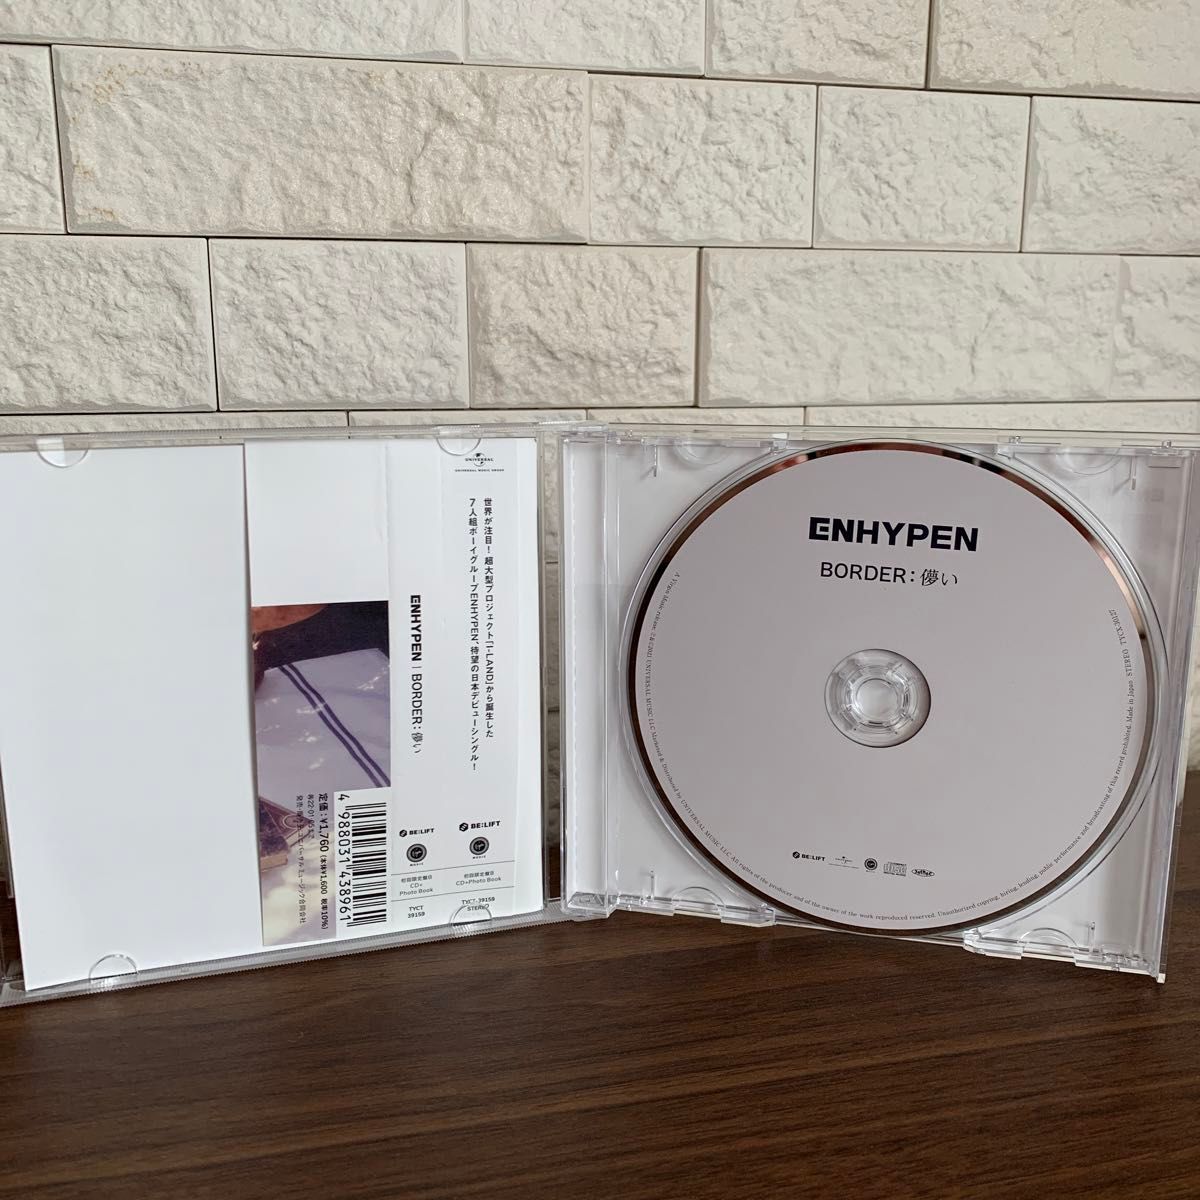 初回限定盤B /フォトブック (初回) ENHYPEN CD+フォトブック/BORDER : 儚い 21/7/6発売 